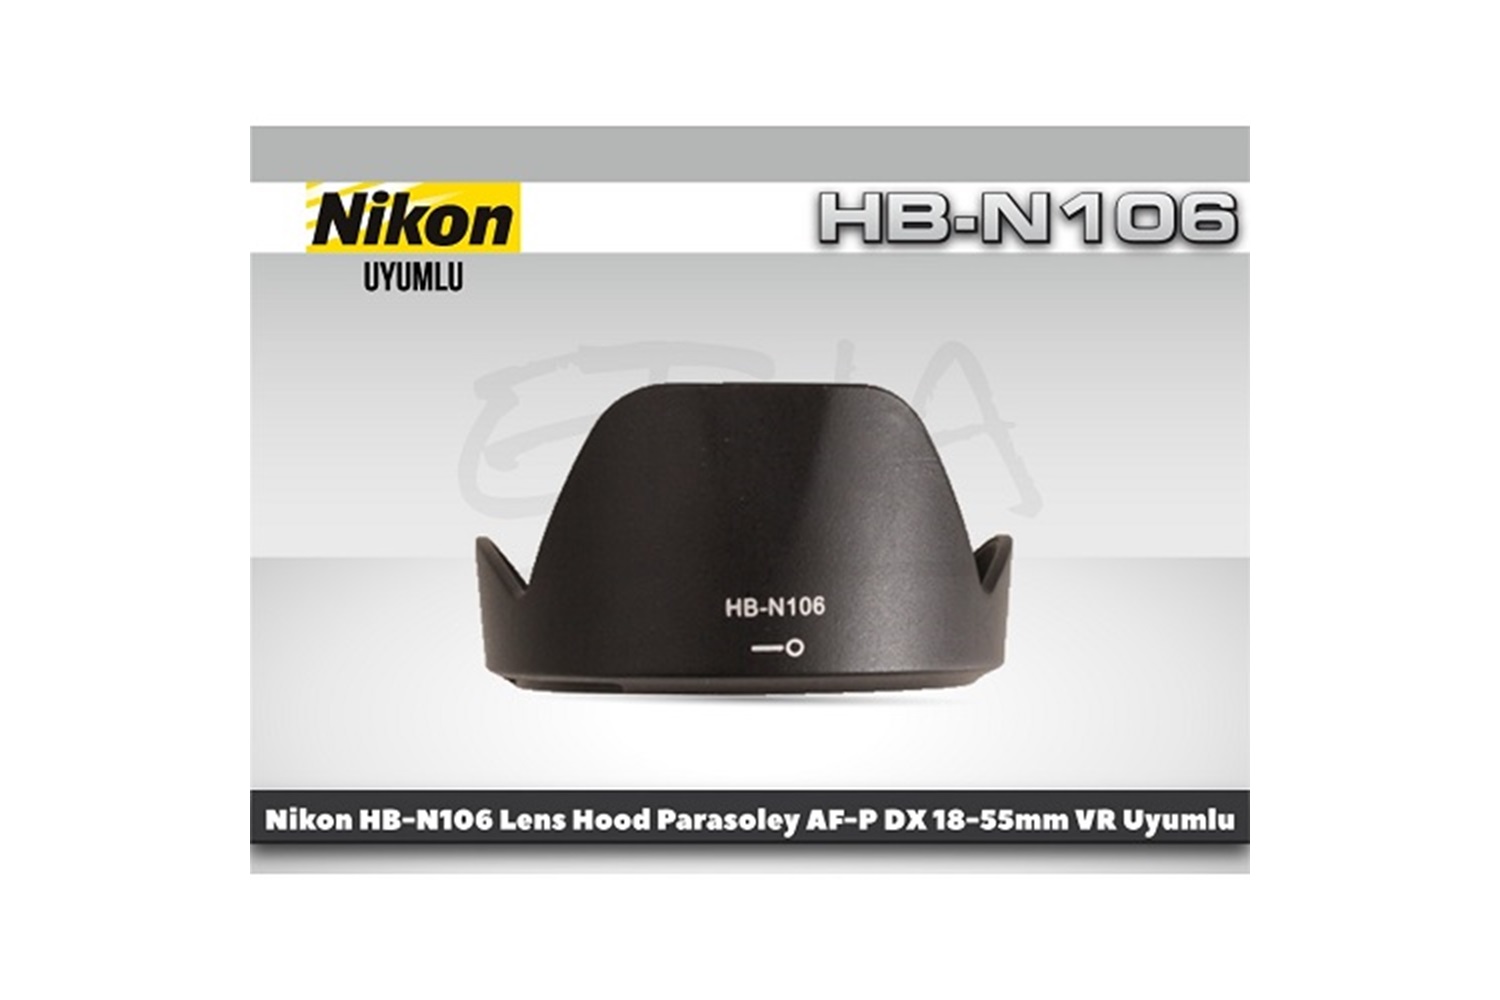 Tewise Nikon HB-N106 Parasoley AF-P DX 18-55mm Lens Uyumlu